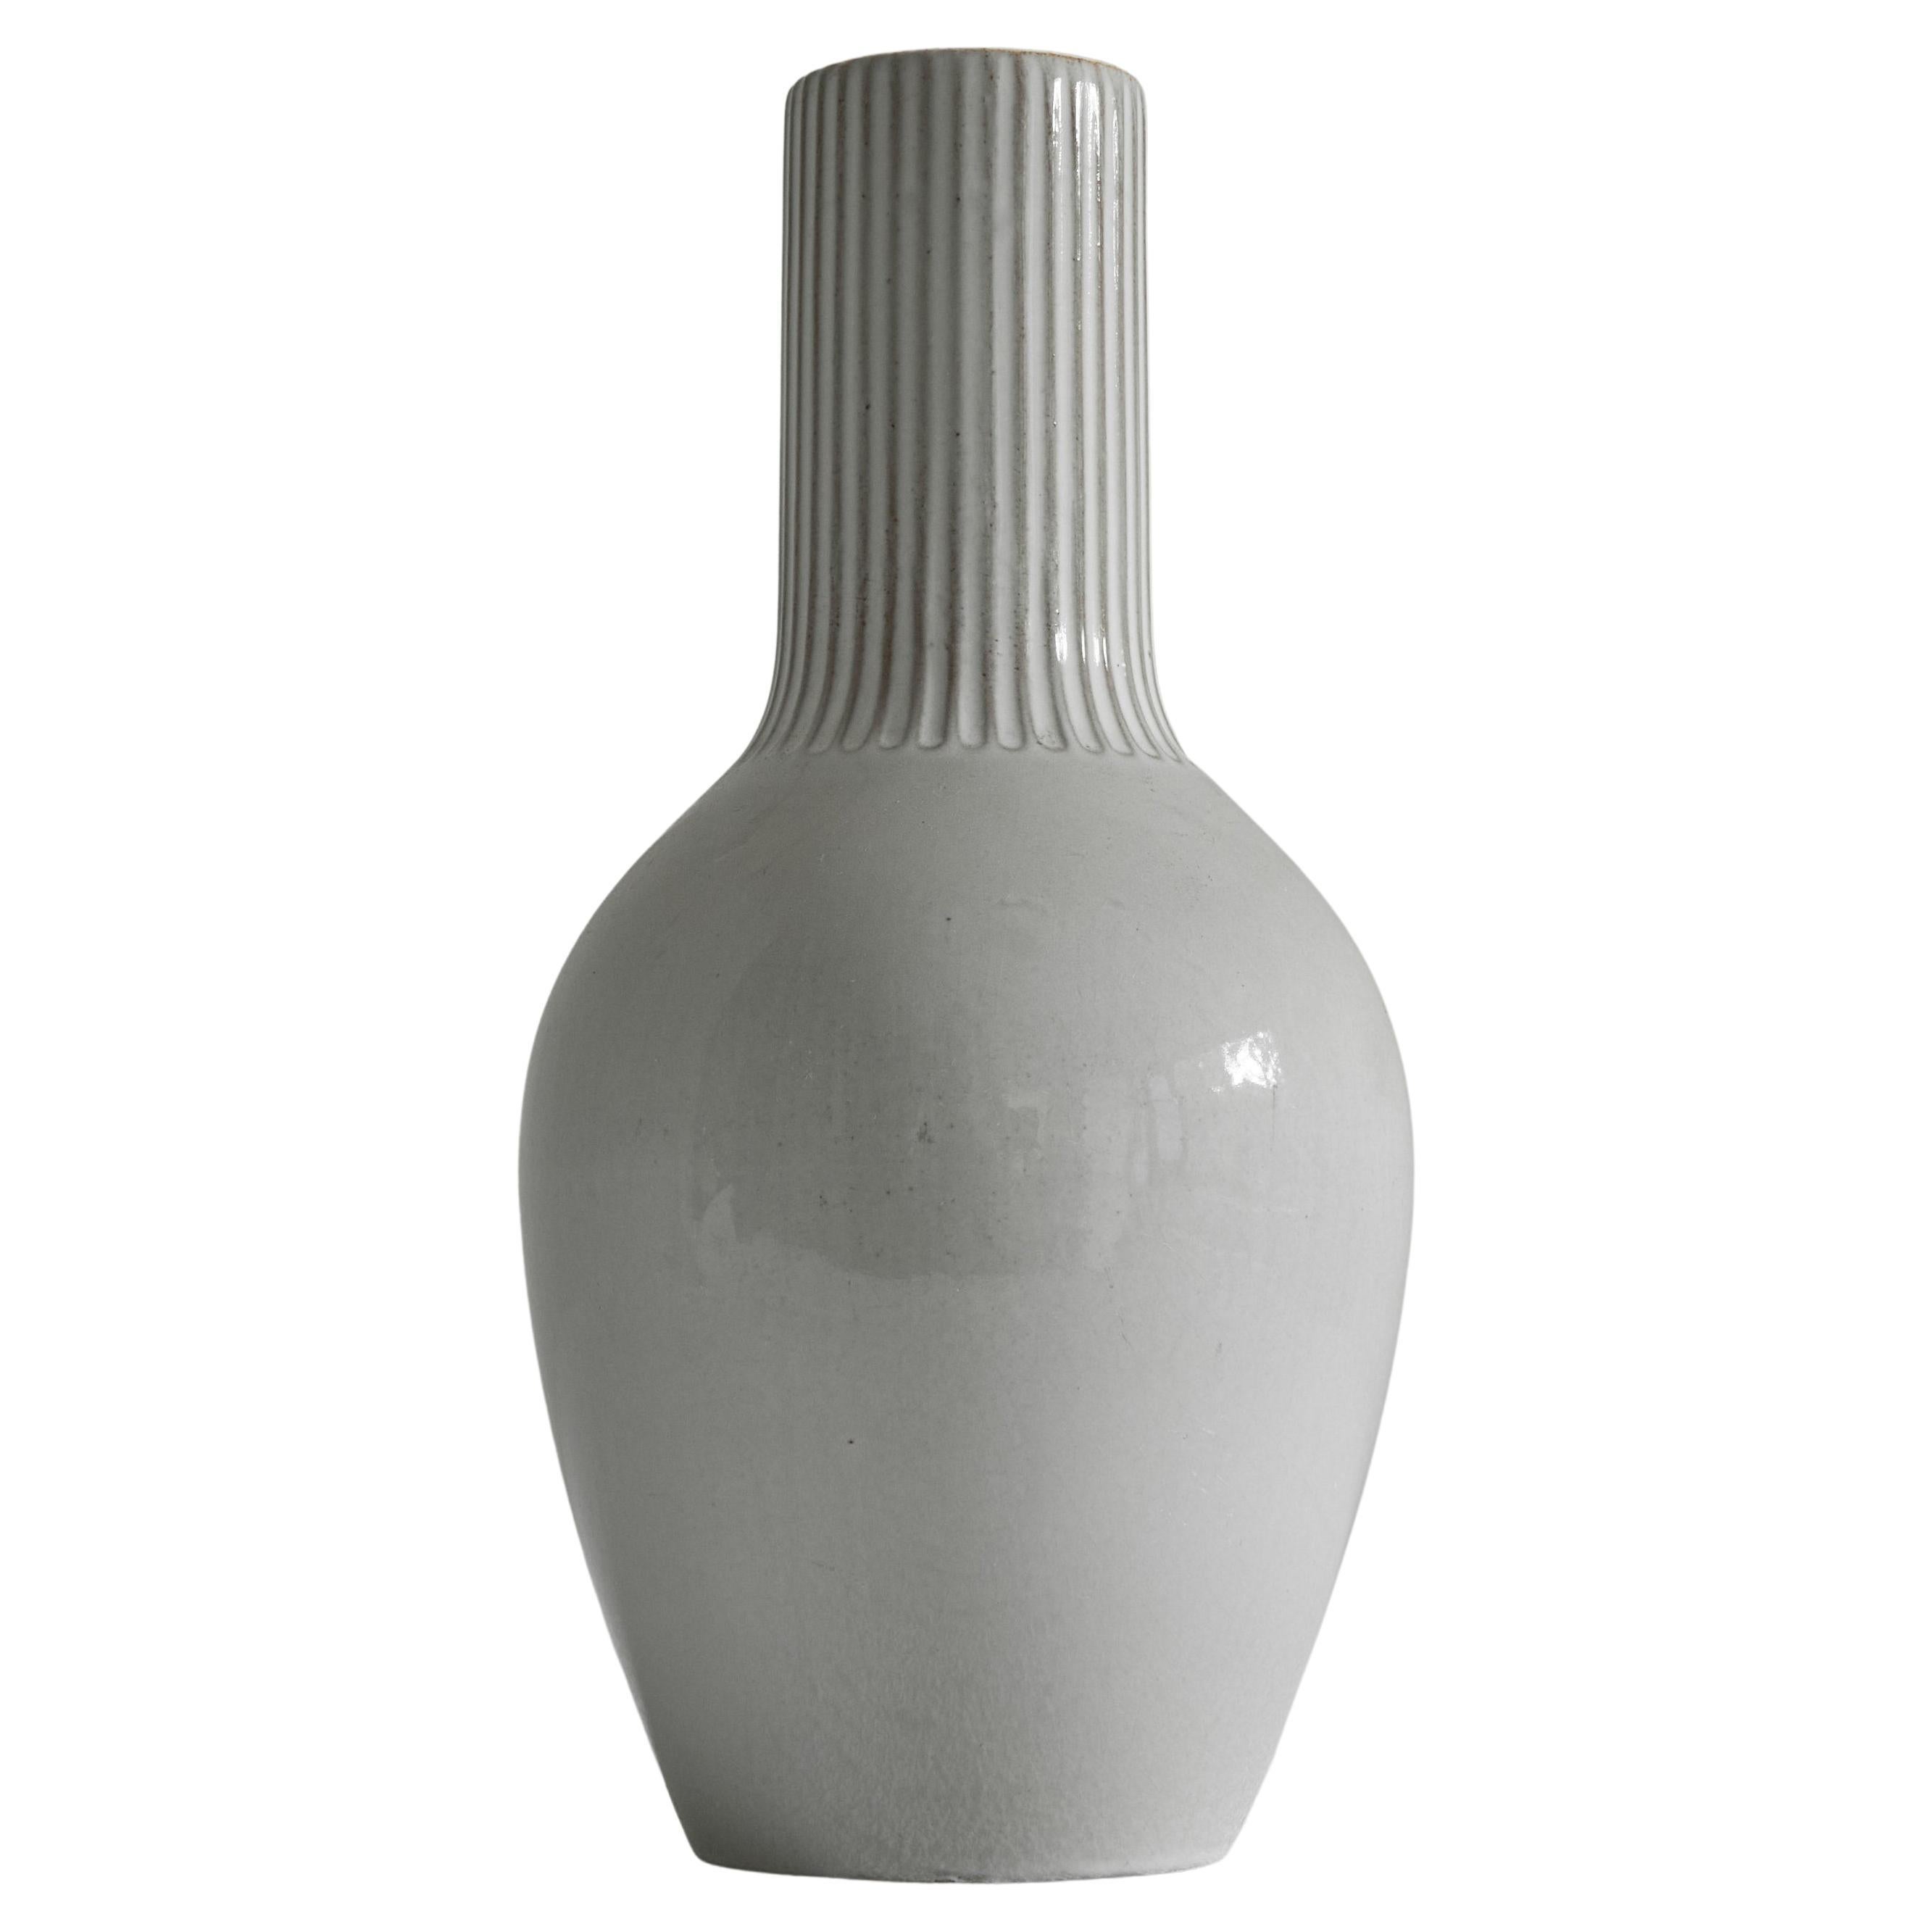 Willem Visser Sphinx Maastricht 'V6' Studio Pottery Vase, 1950s For Sale